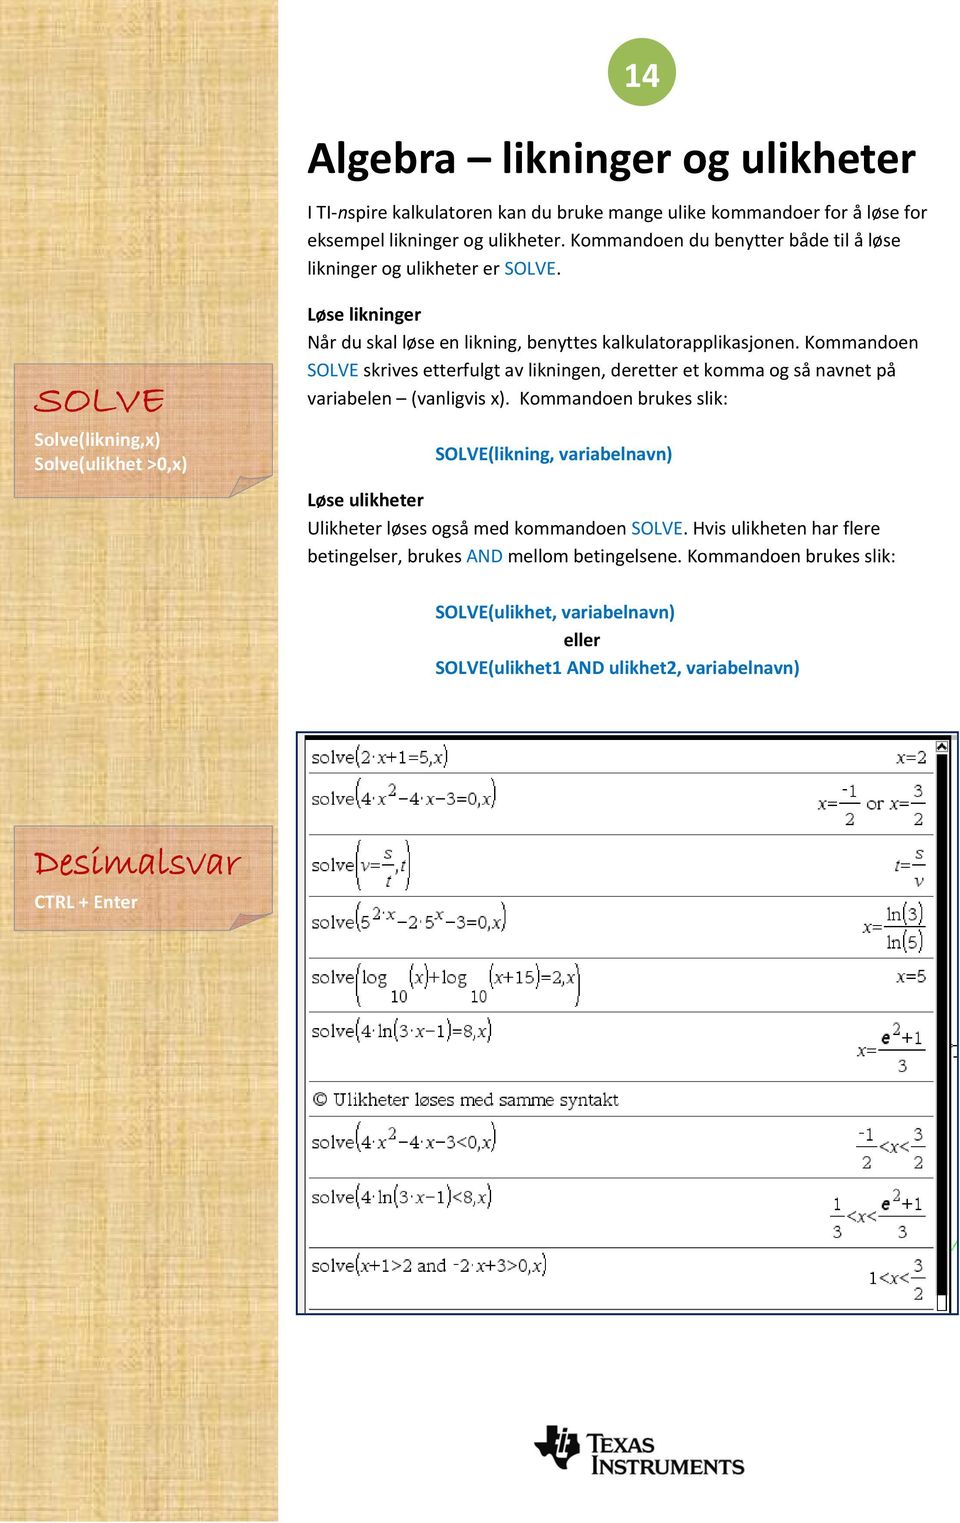 SOLVE Solve(likning,x) Solve(ulikhet >0,x) Løse likninger Når du skal løse en likning, benyttes kalkulatorapplikasjonen.